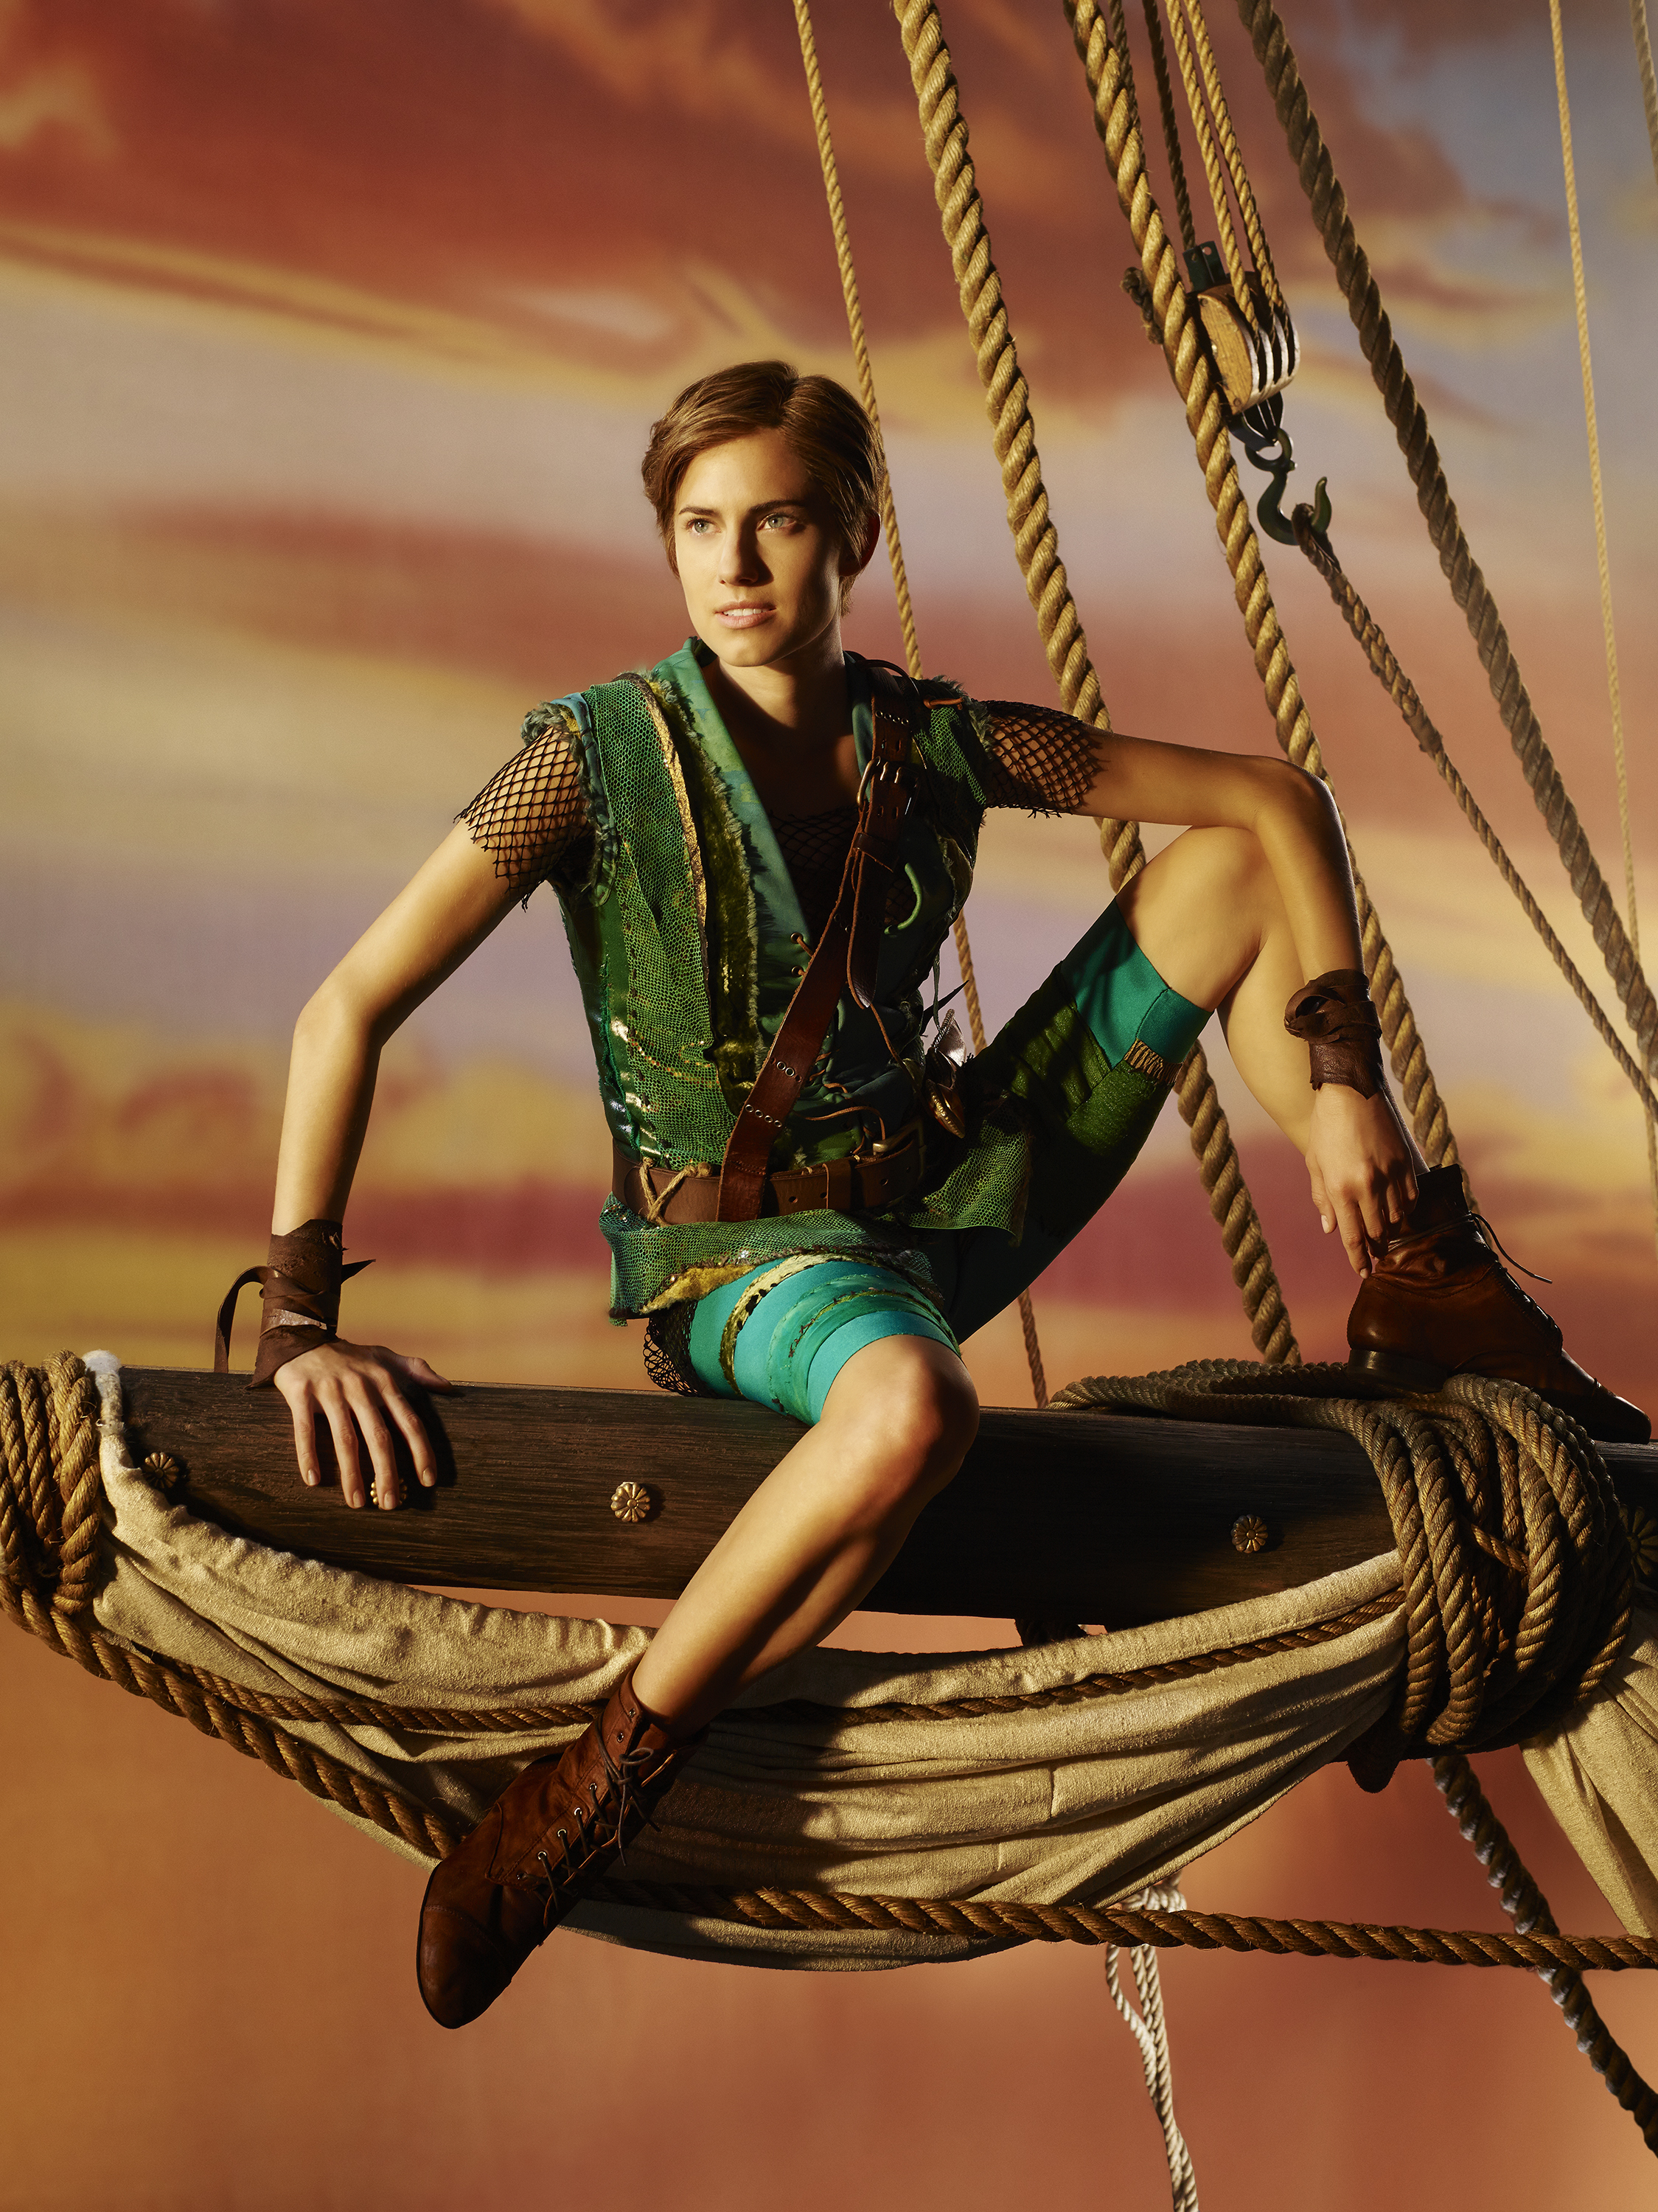 Peter Pan LIVE! - NBC.com
